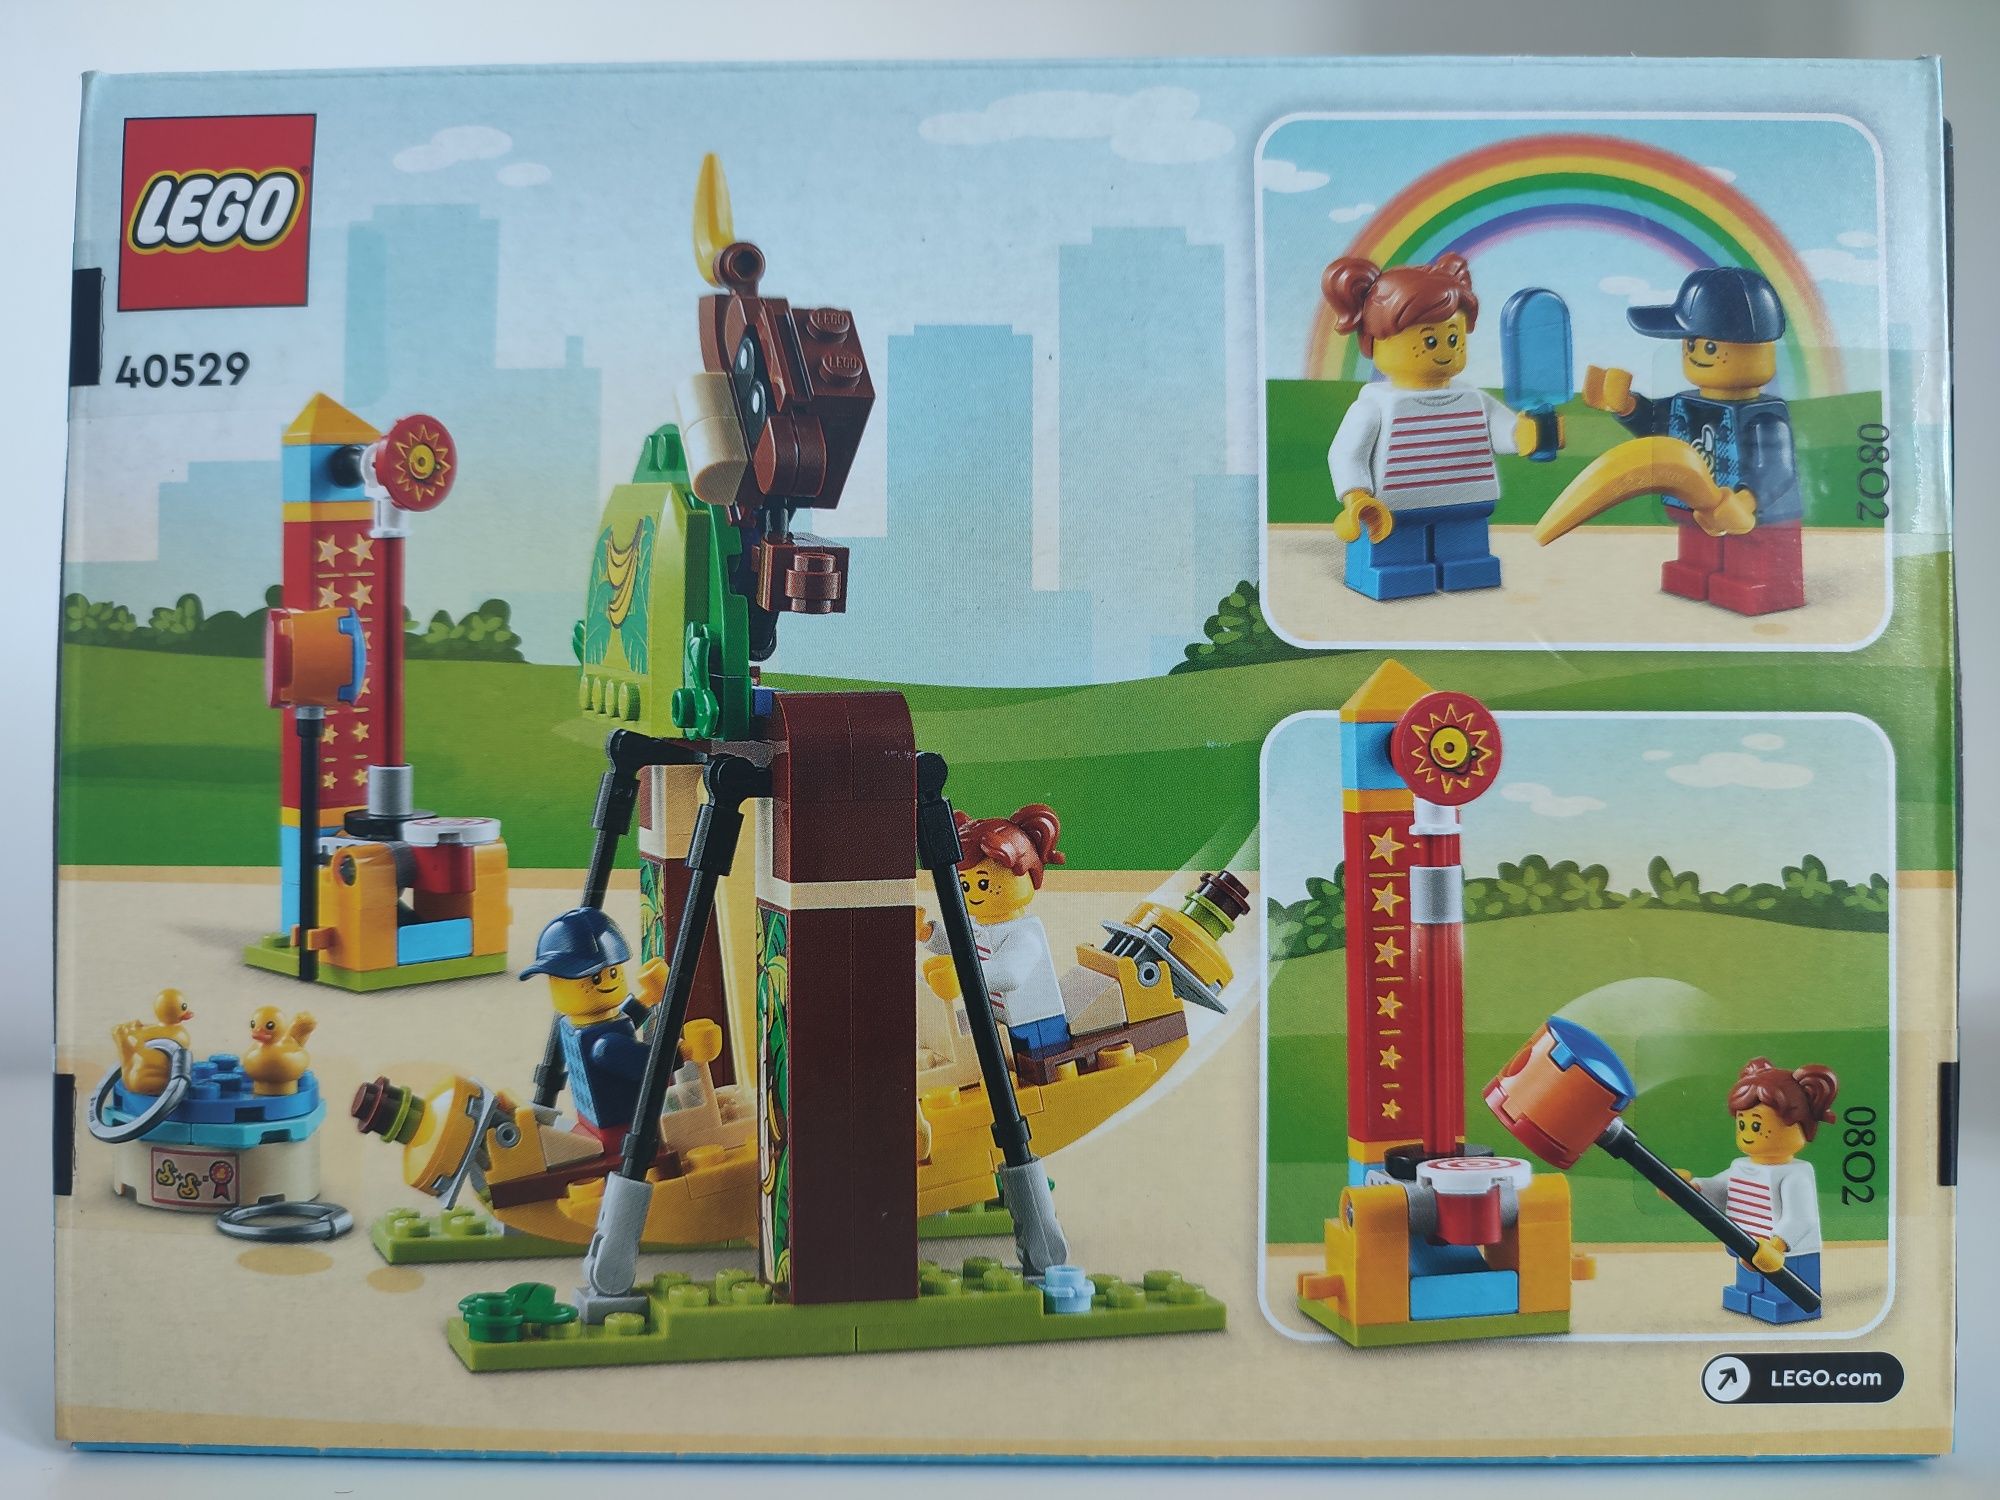 Lego 40529 - RARO - Selado - Parque de diversões NOVO E SELADO